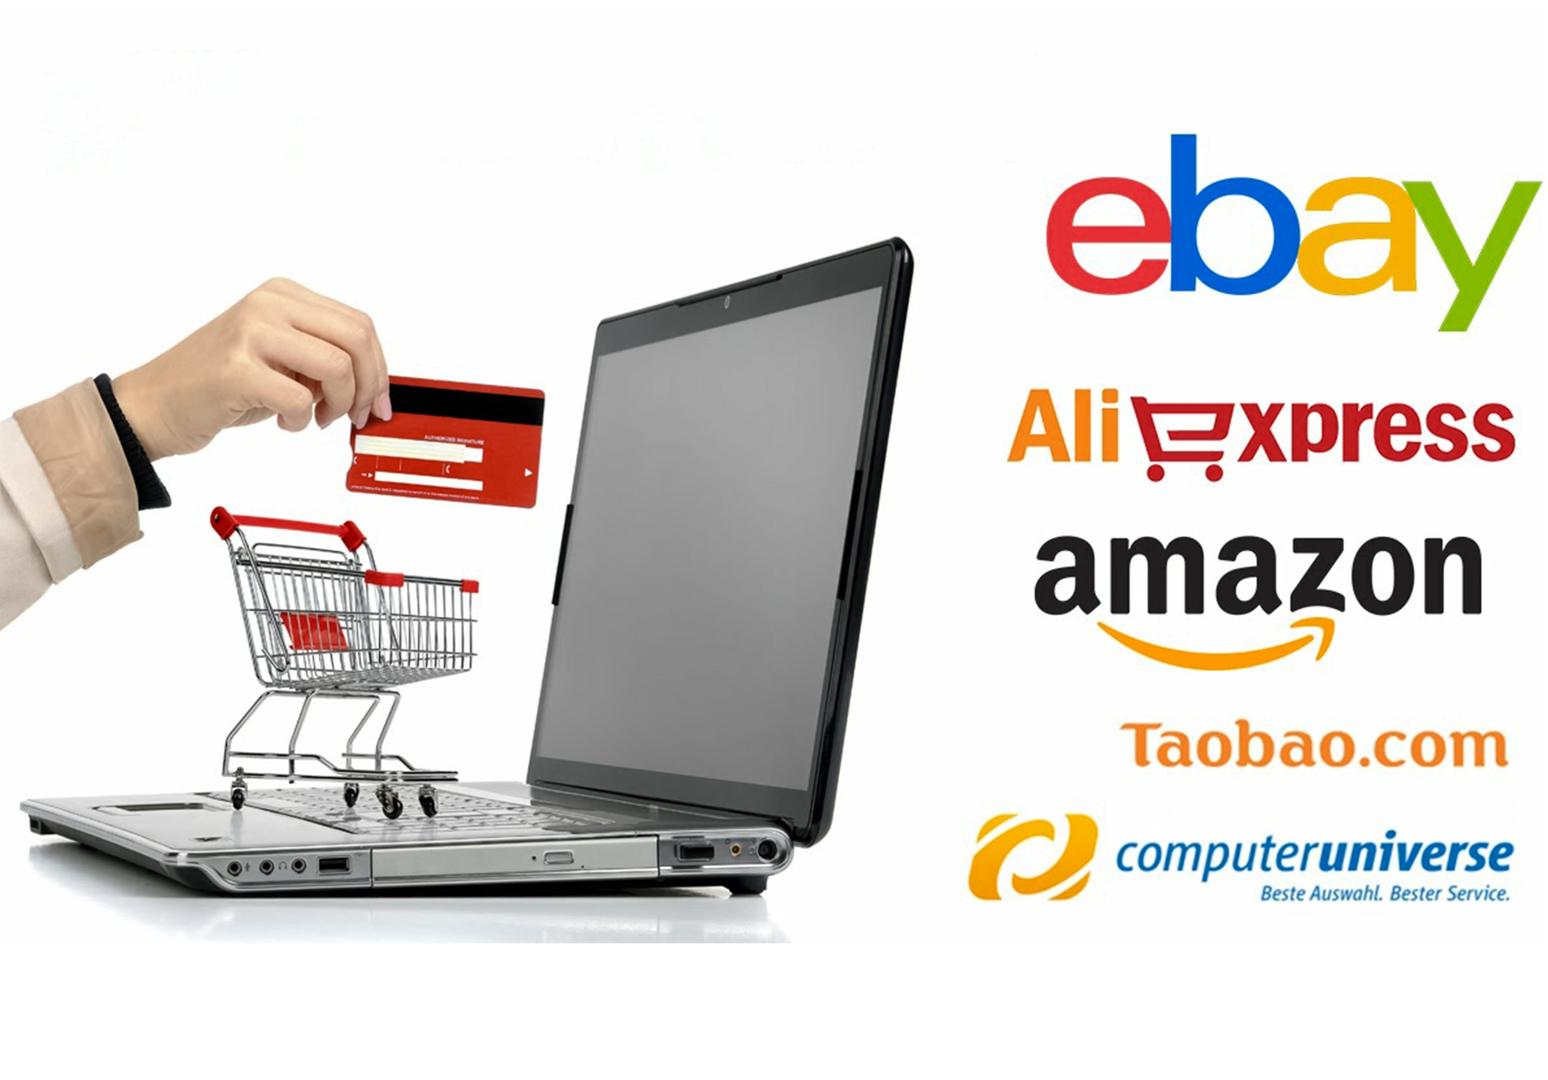 Как Купить Ноутбук На Ebay